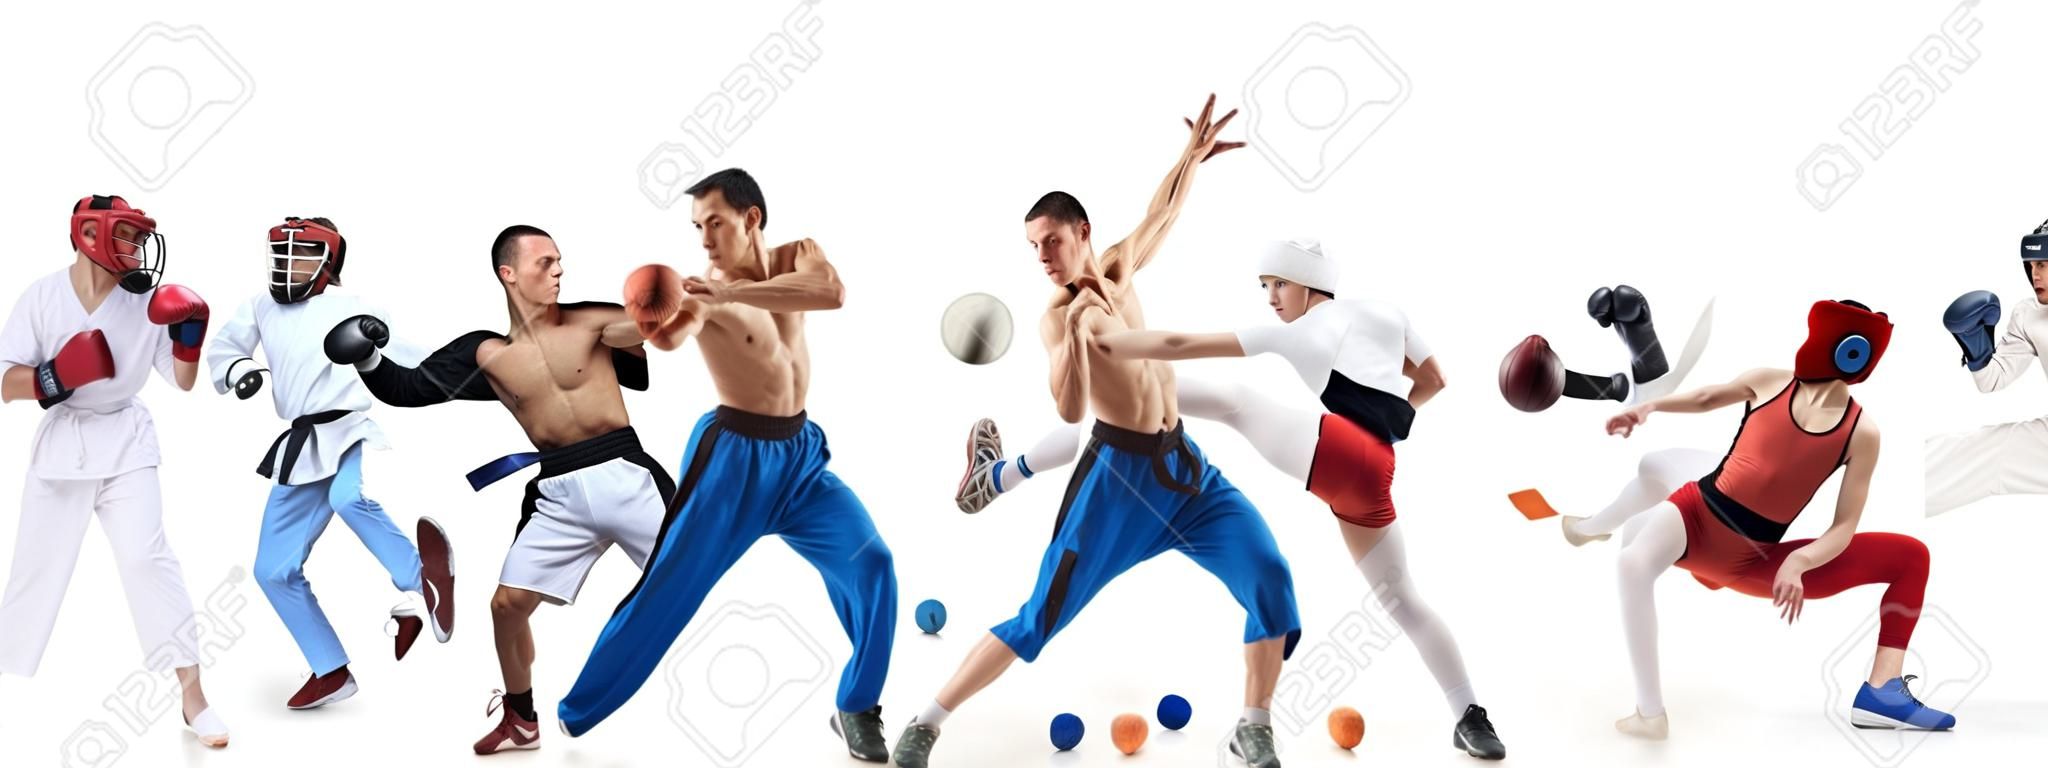 Collage sportif sur la boxe, le football, le football américain, le basket-ball, le hockey sur glace, l'escrime, le jogging, le taekwondo, le tennis